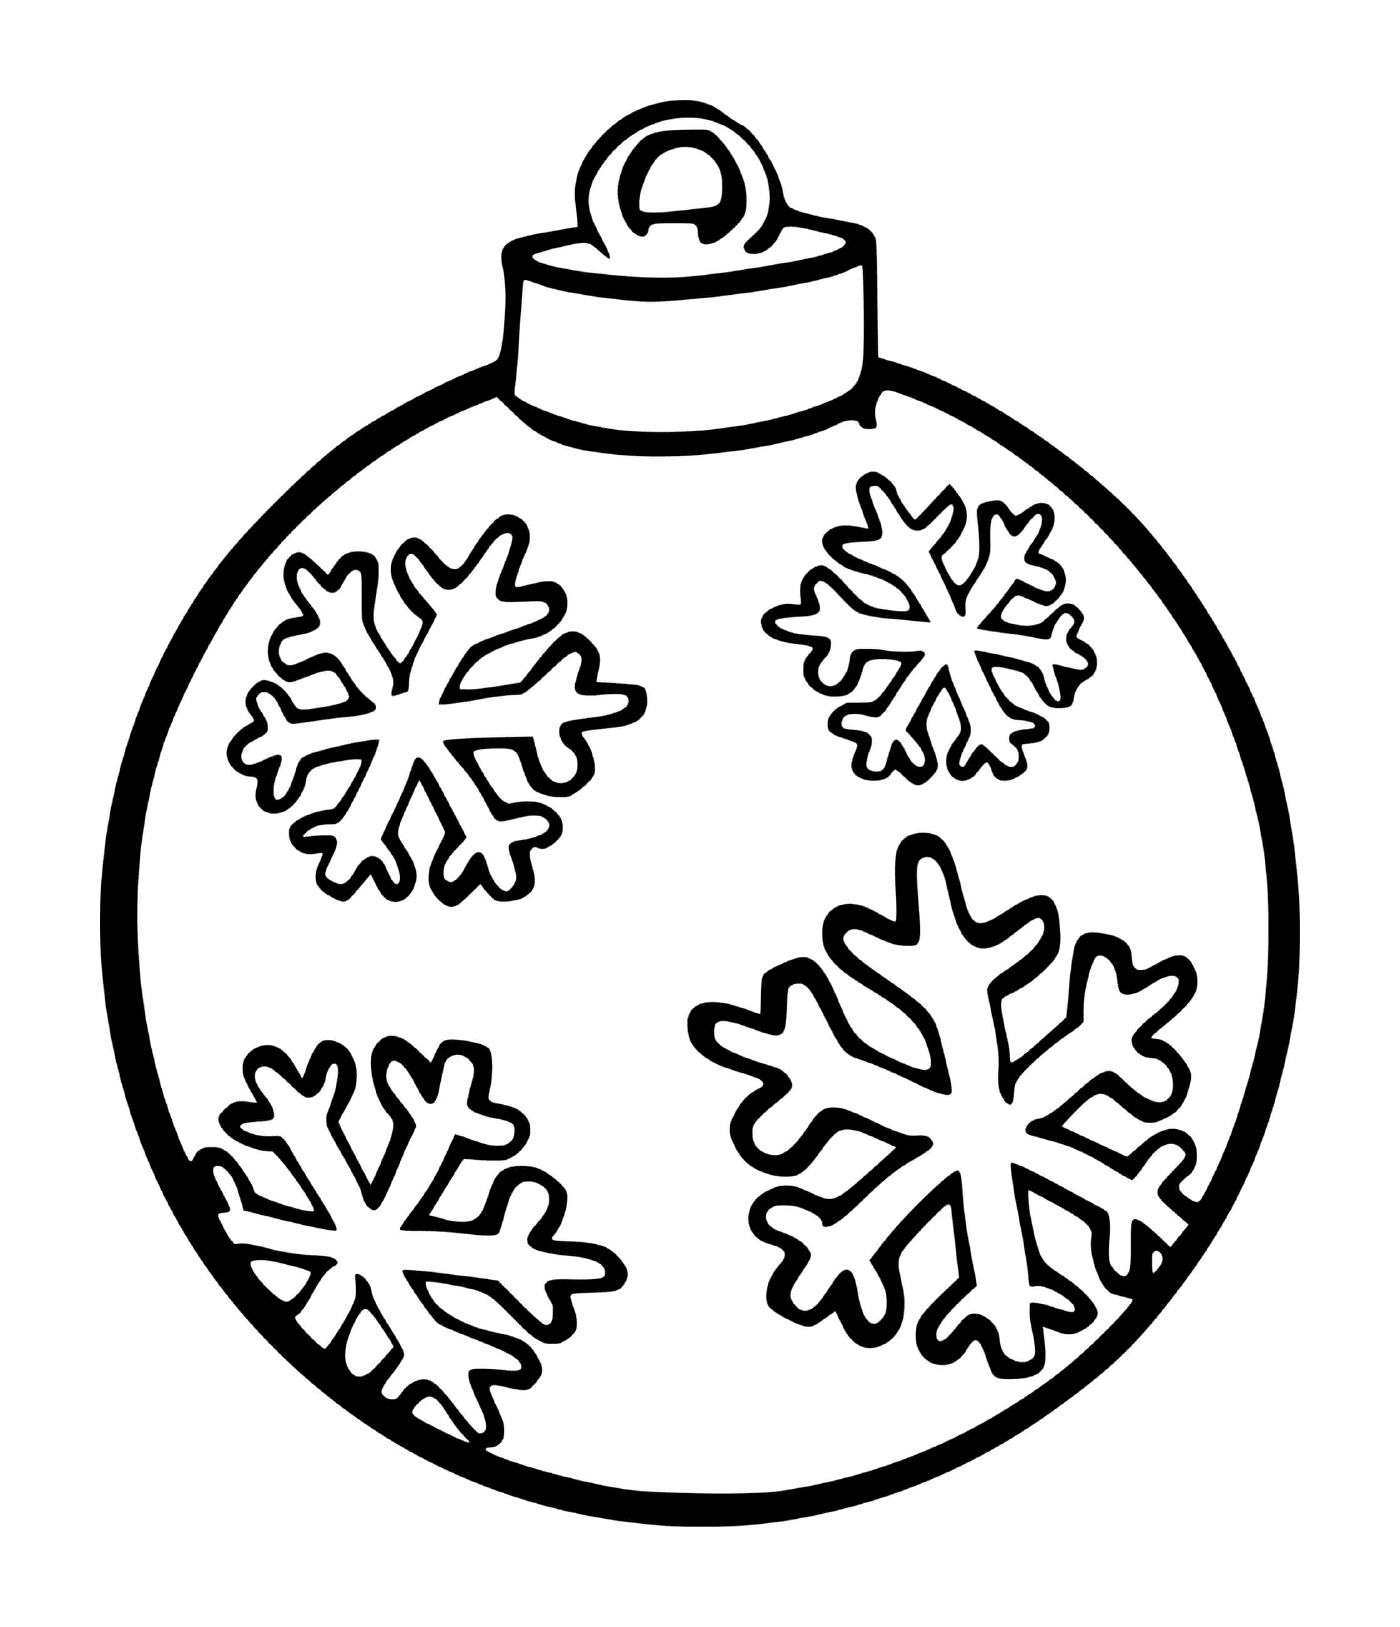  Floco de neve em uma bola de árvore de Natal 